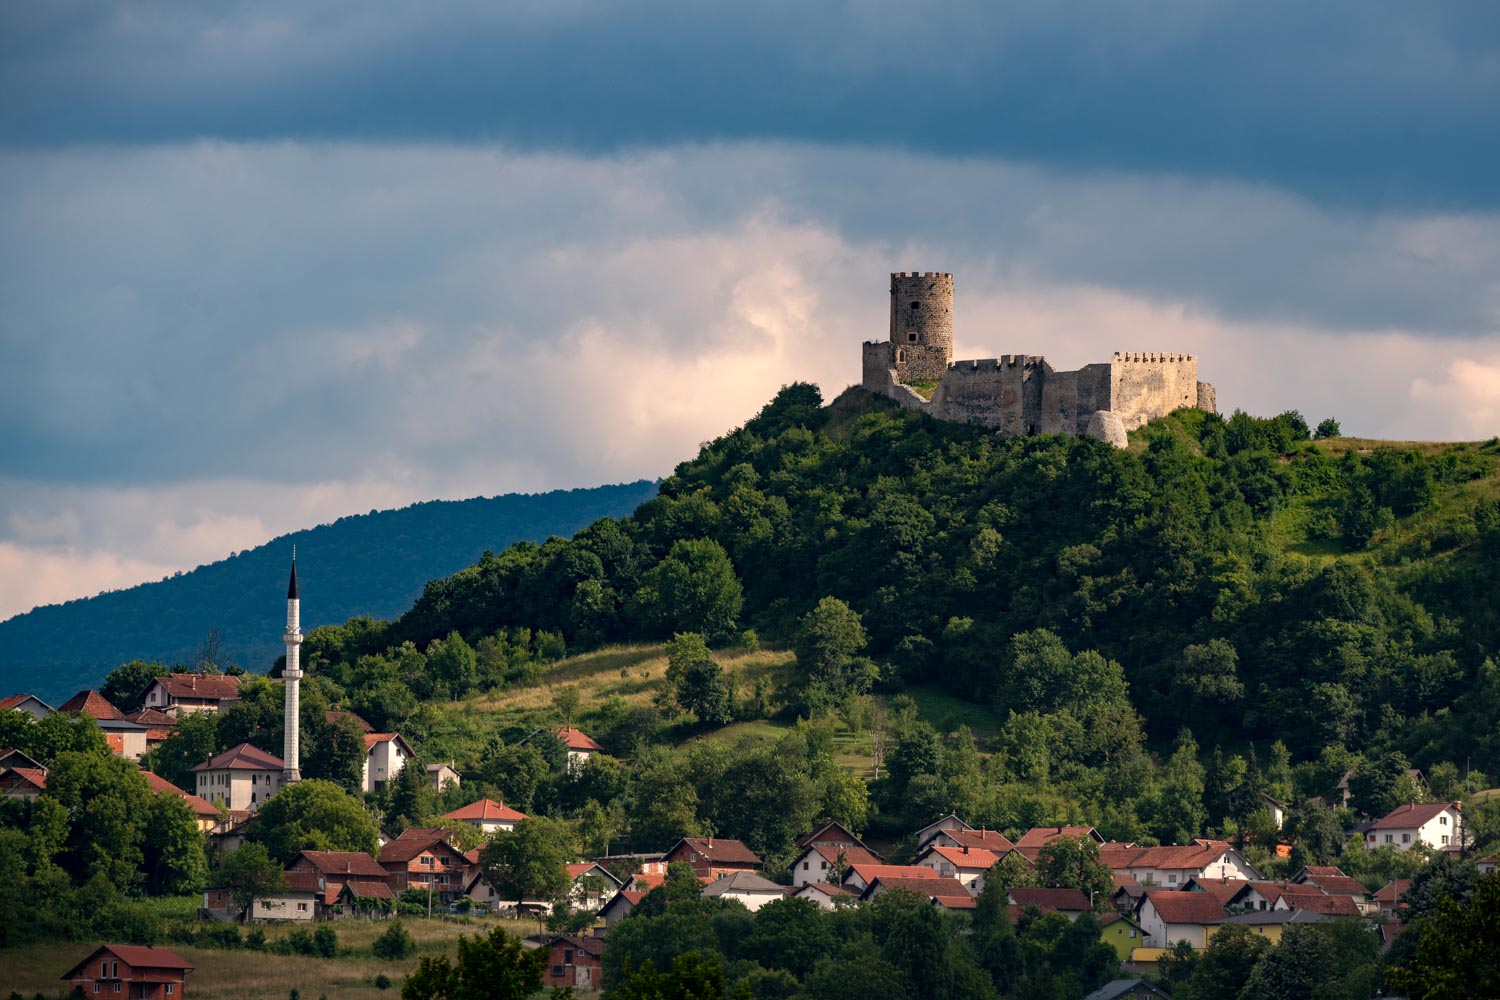  Nova trim staza prema srednjovjekovnom gradu Sokolac